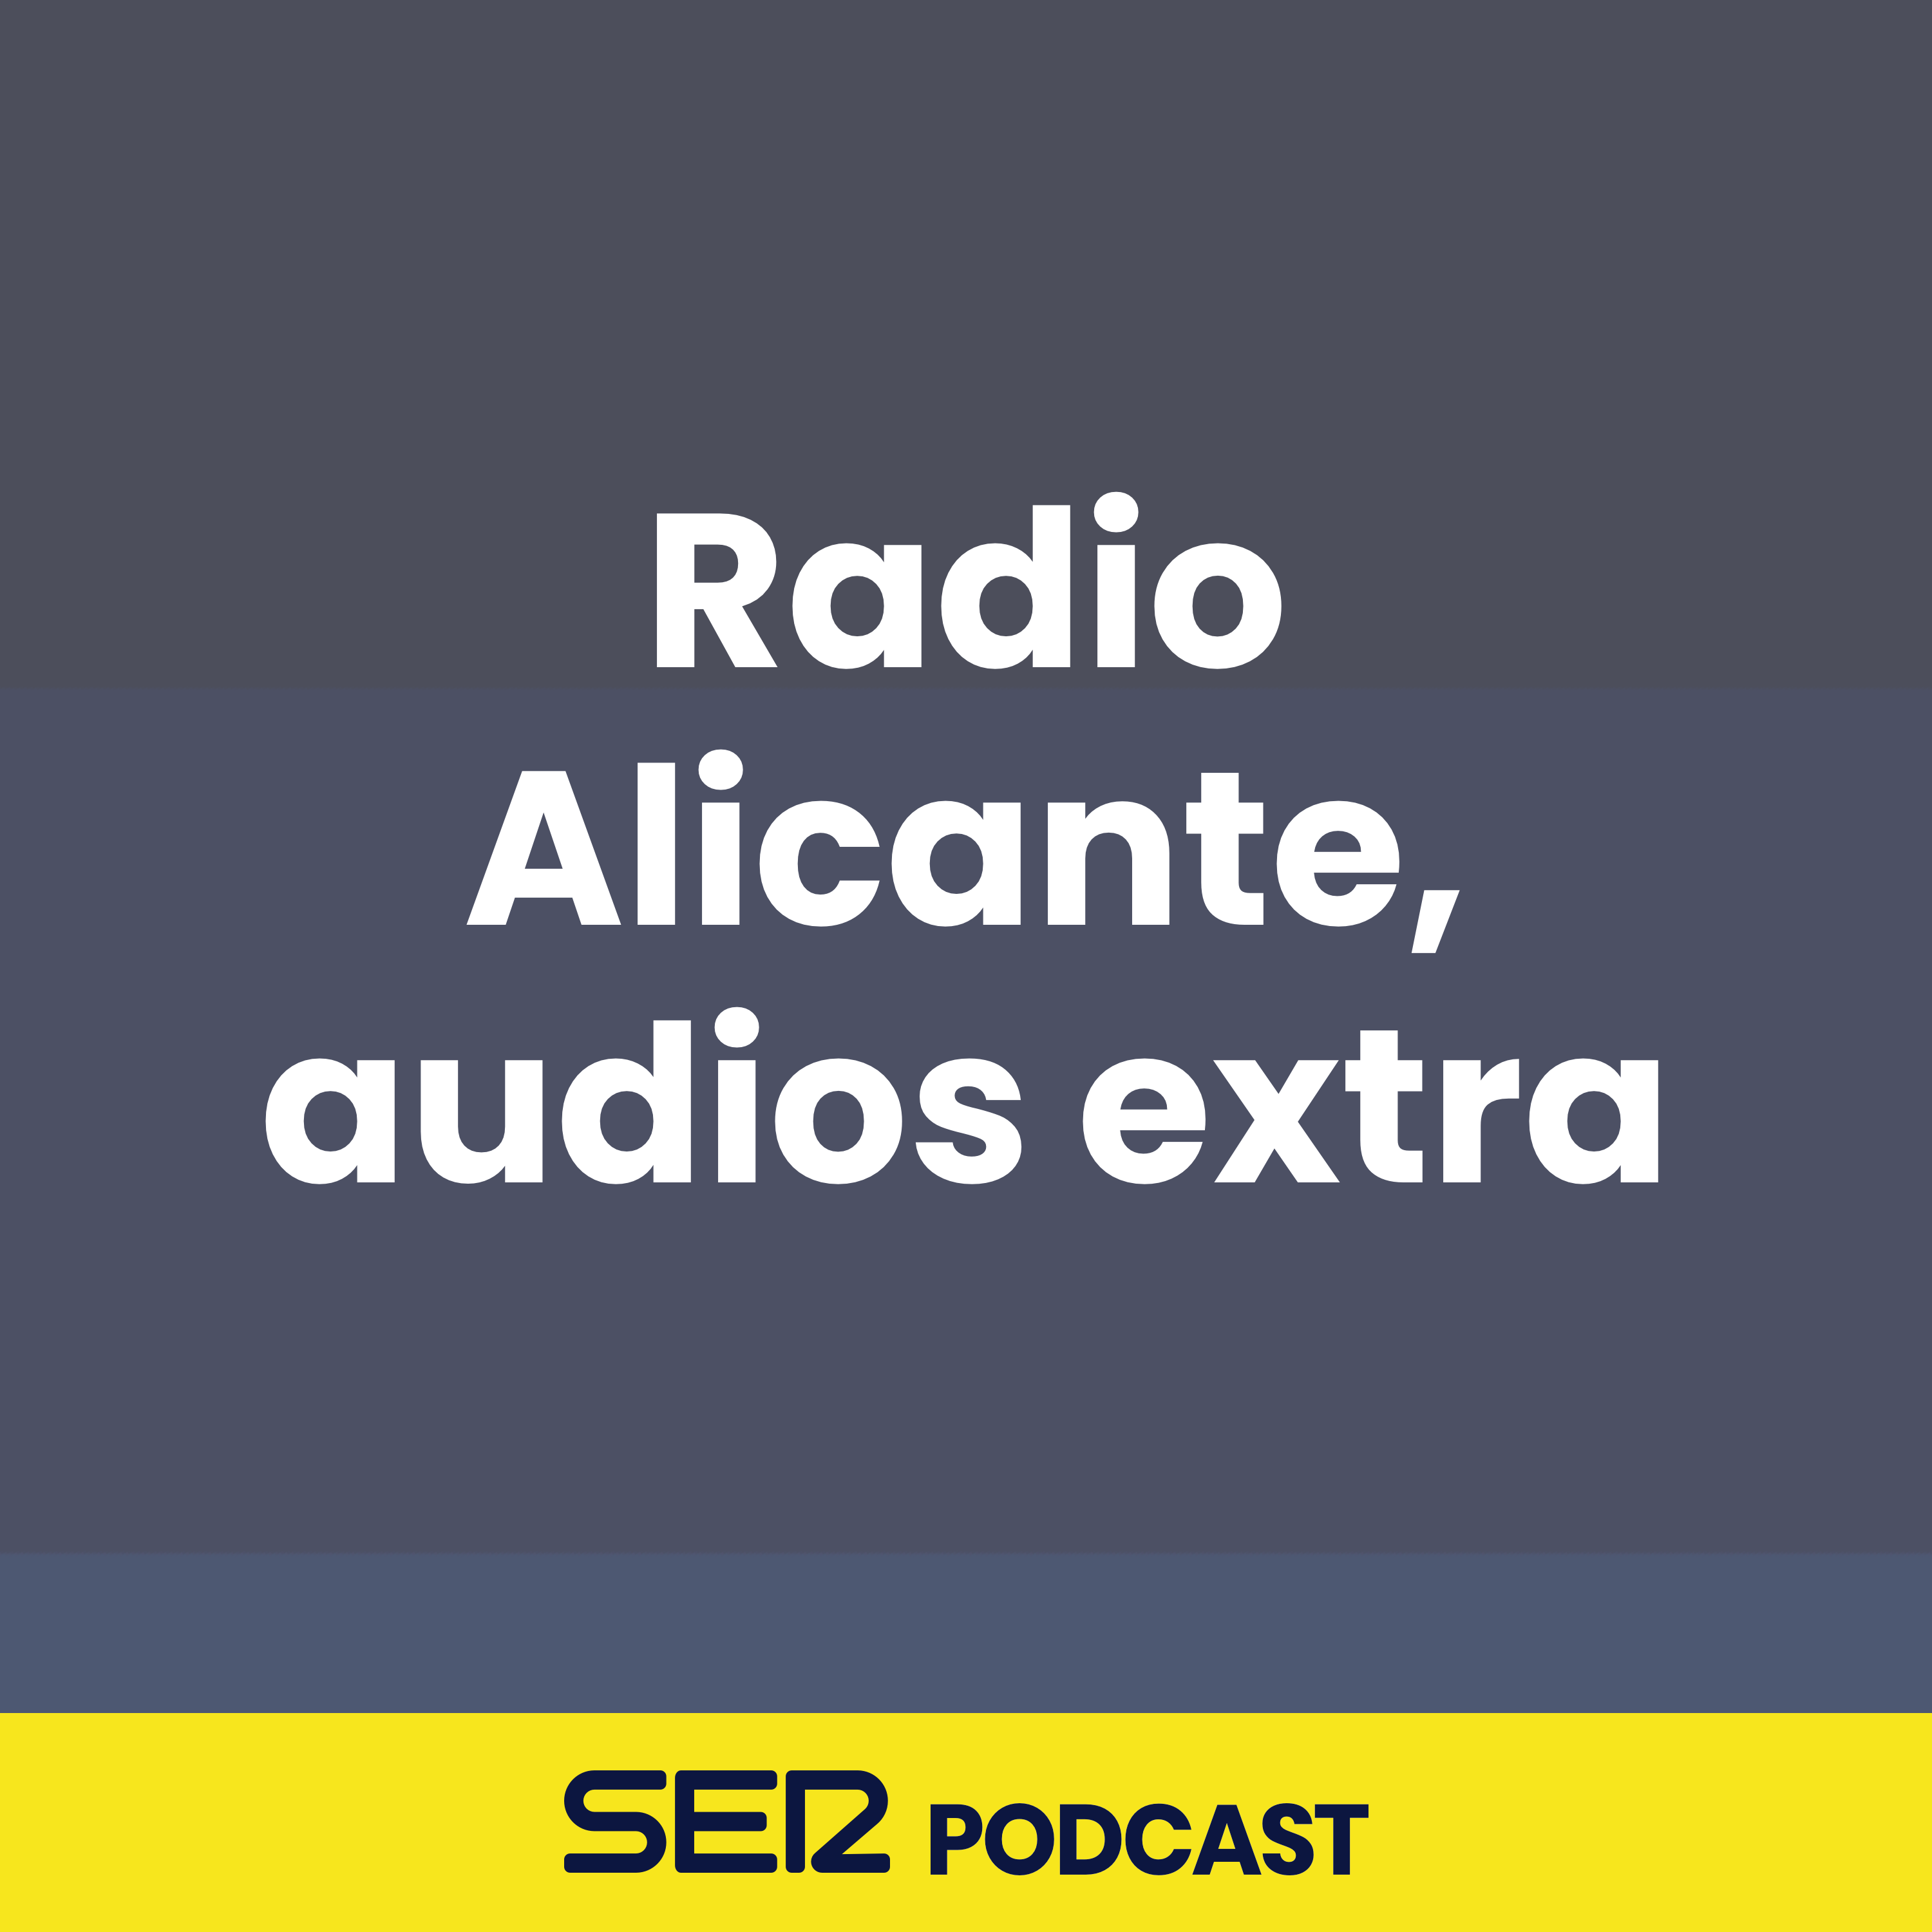 Radio Alicante, audios extra